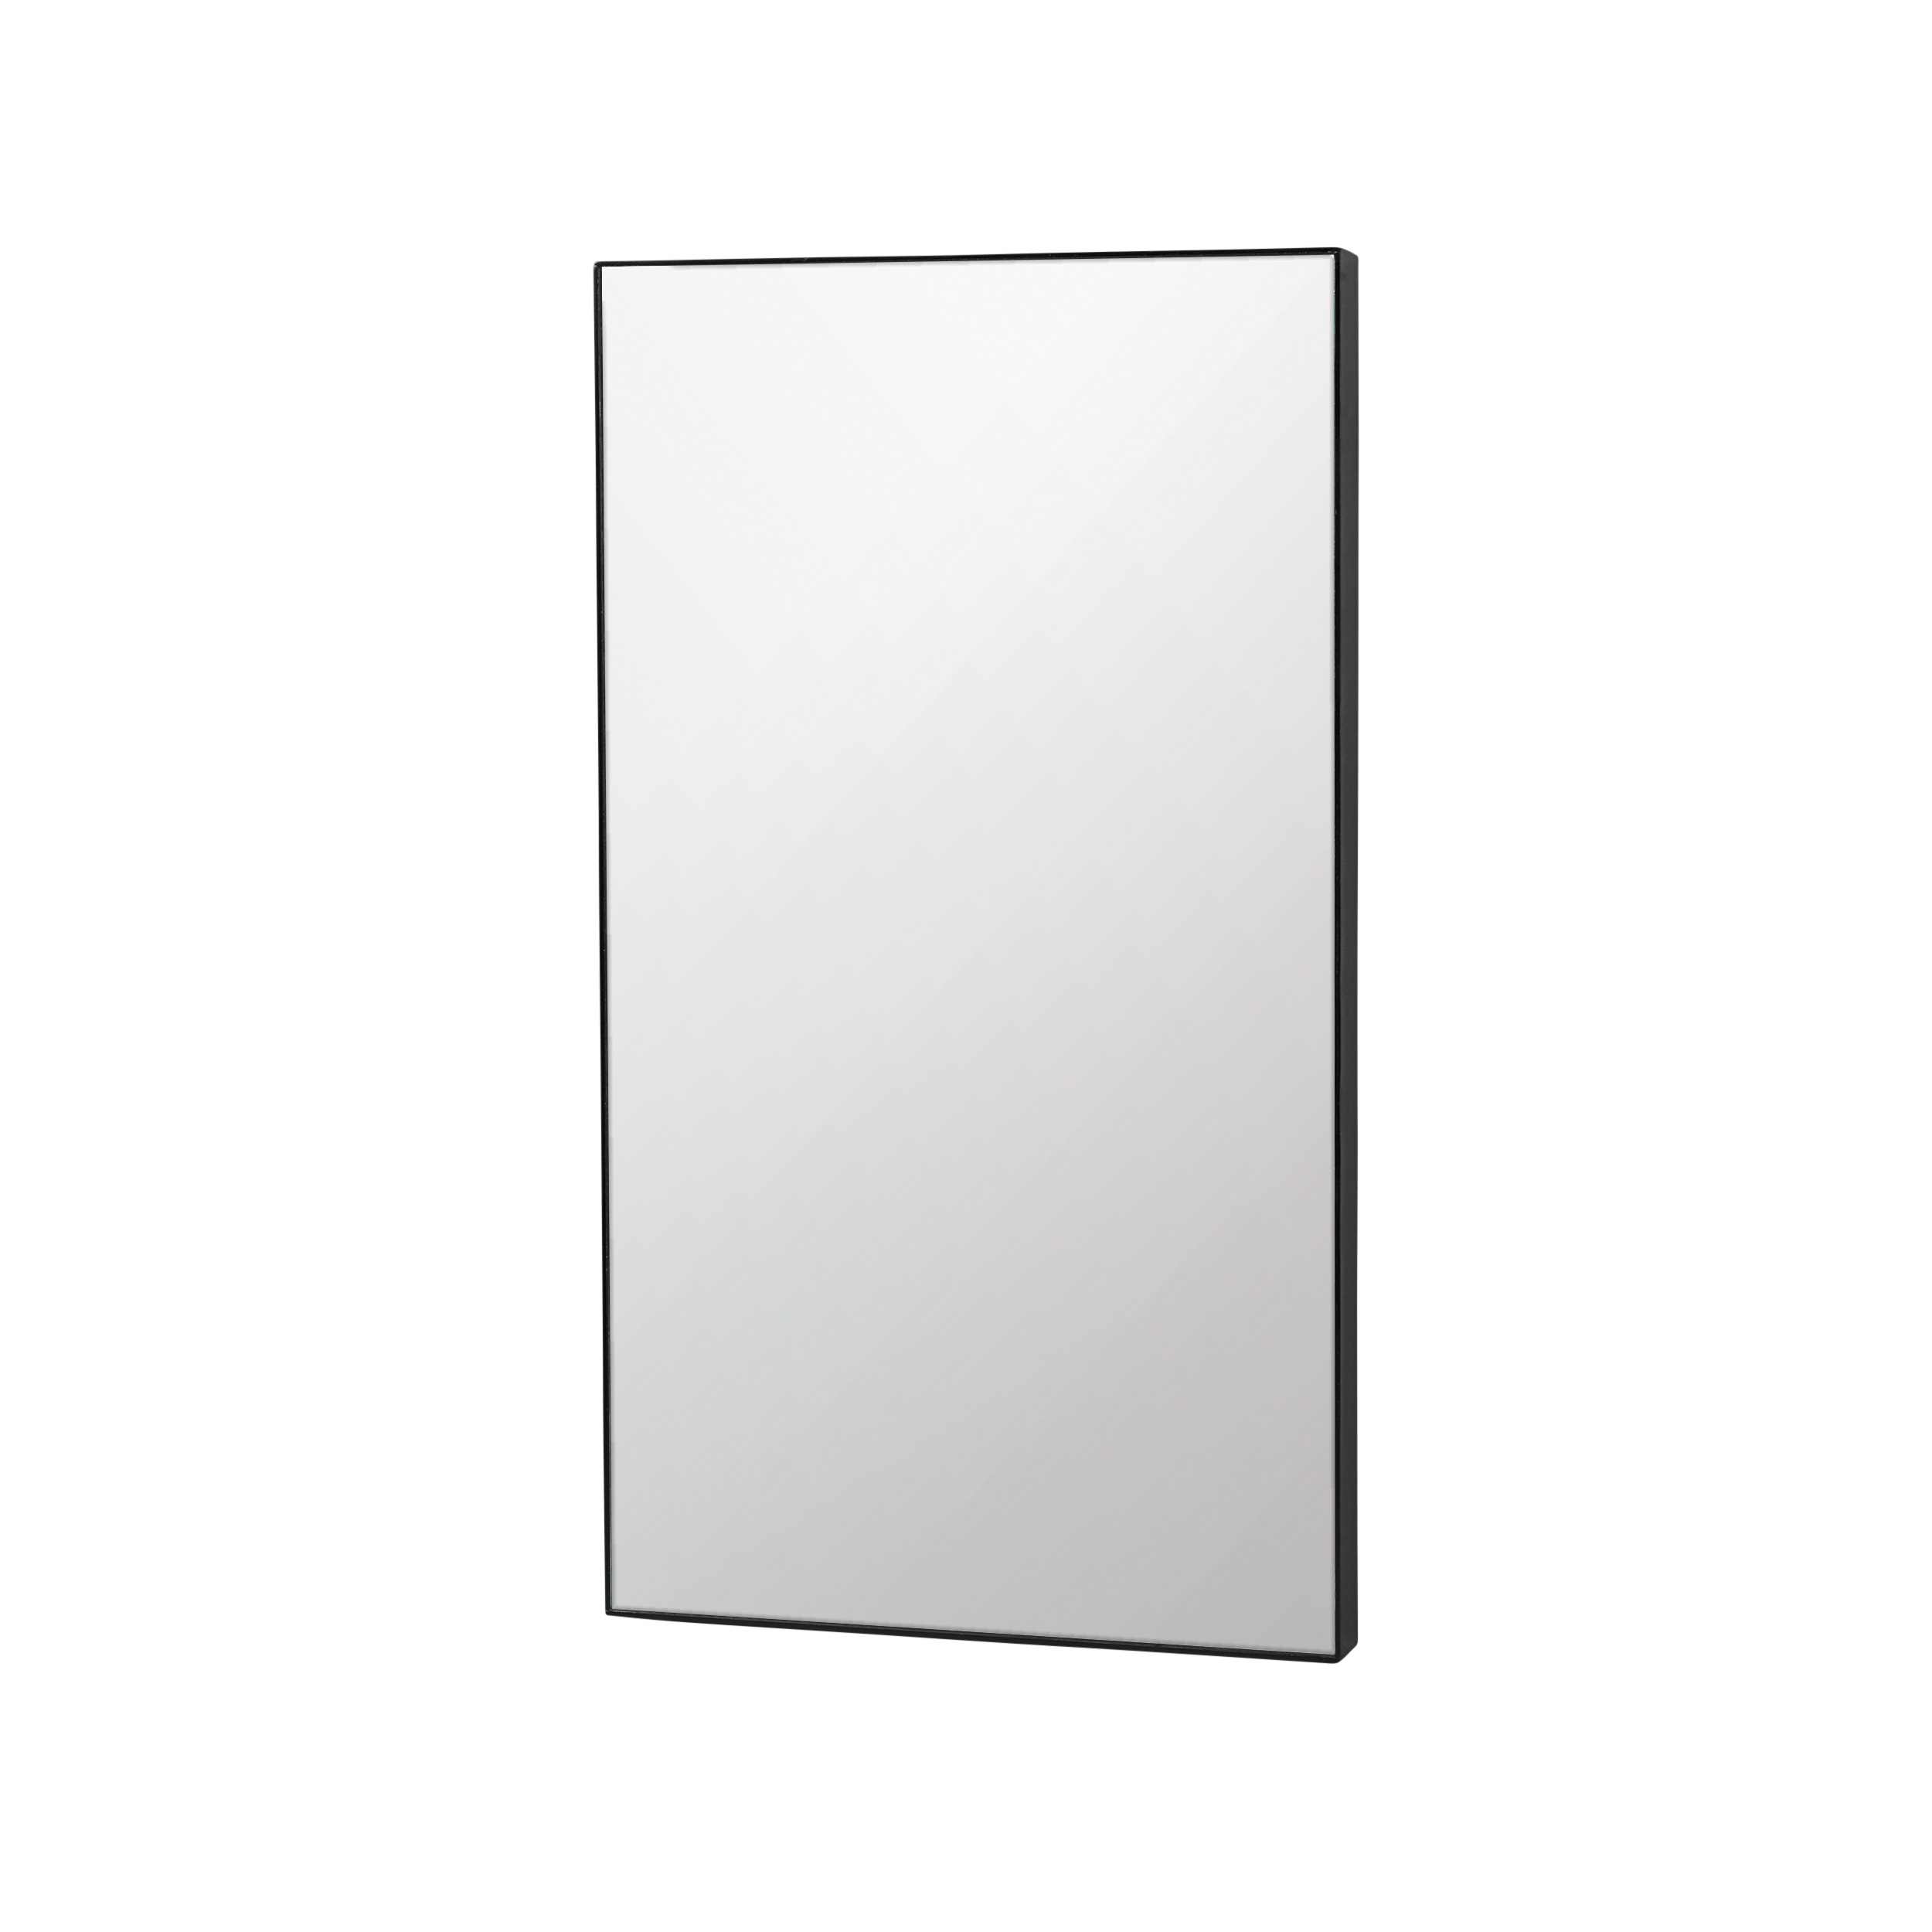 Broste Spiegel Complete 60x110cm schwarz